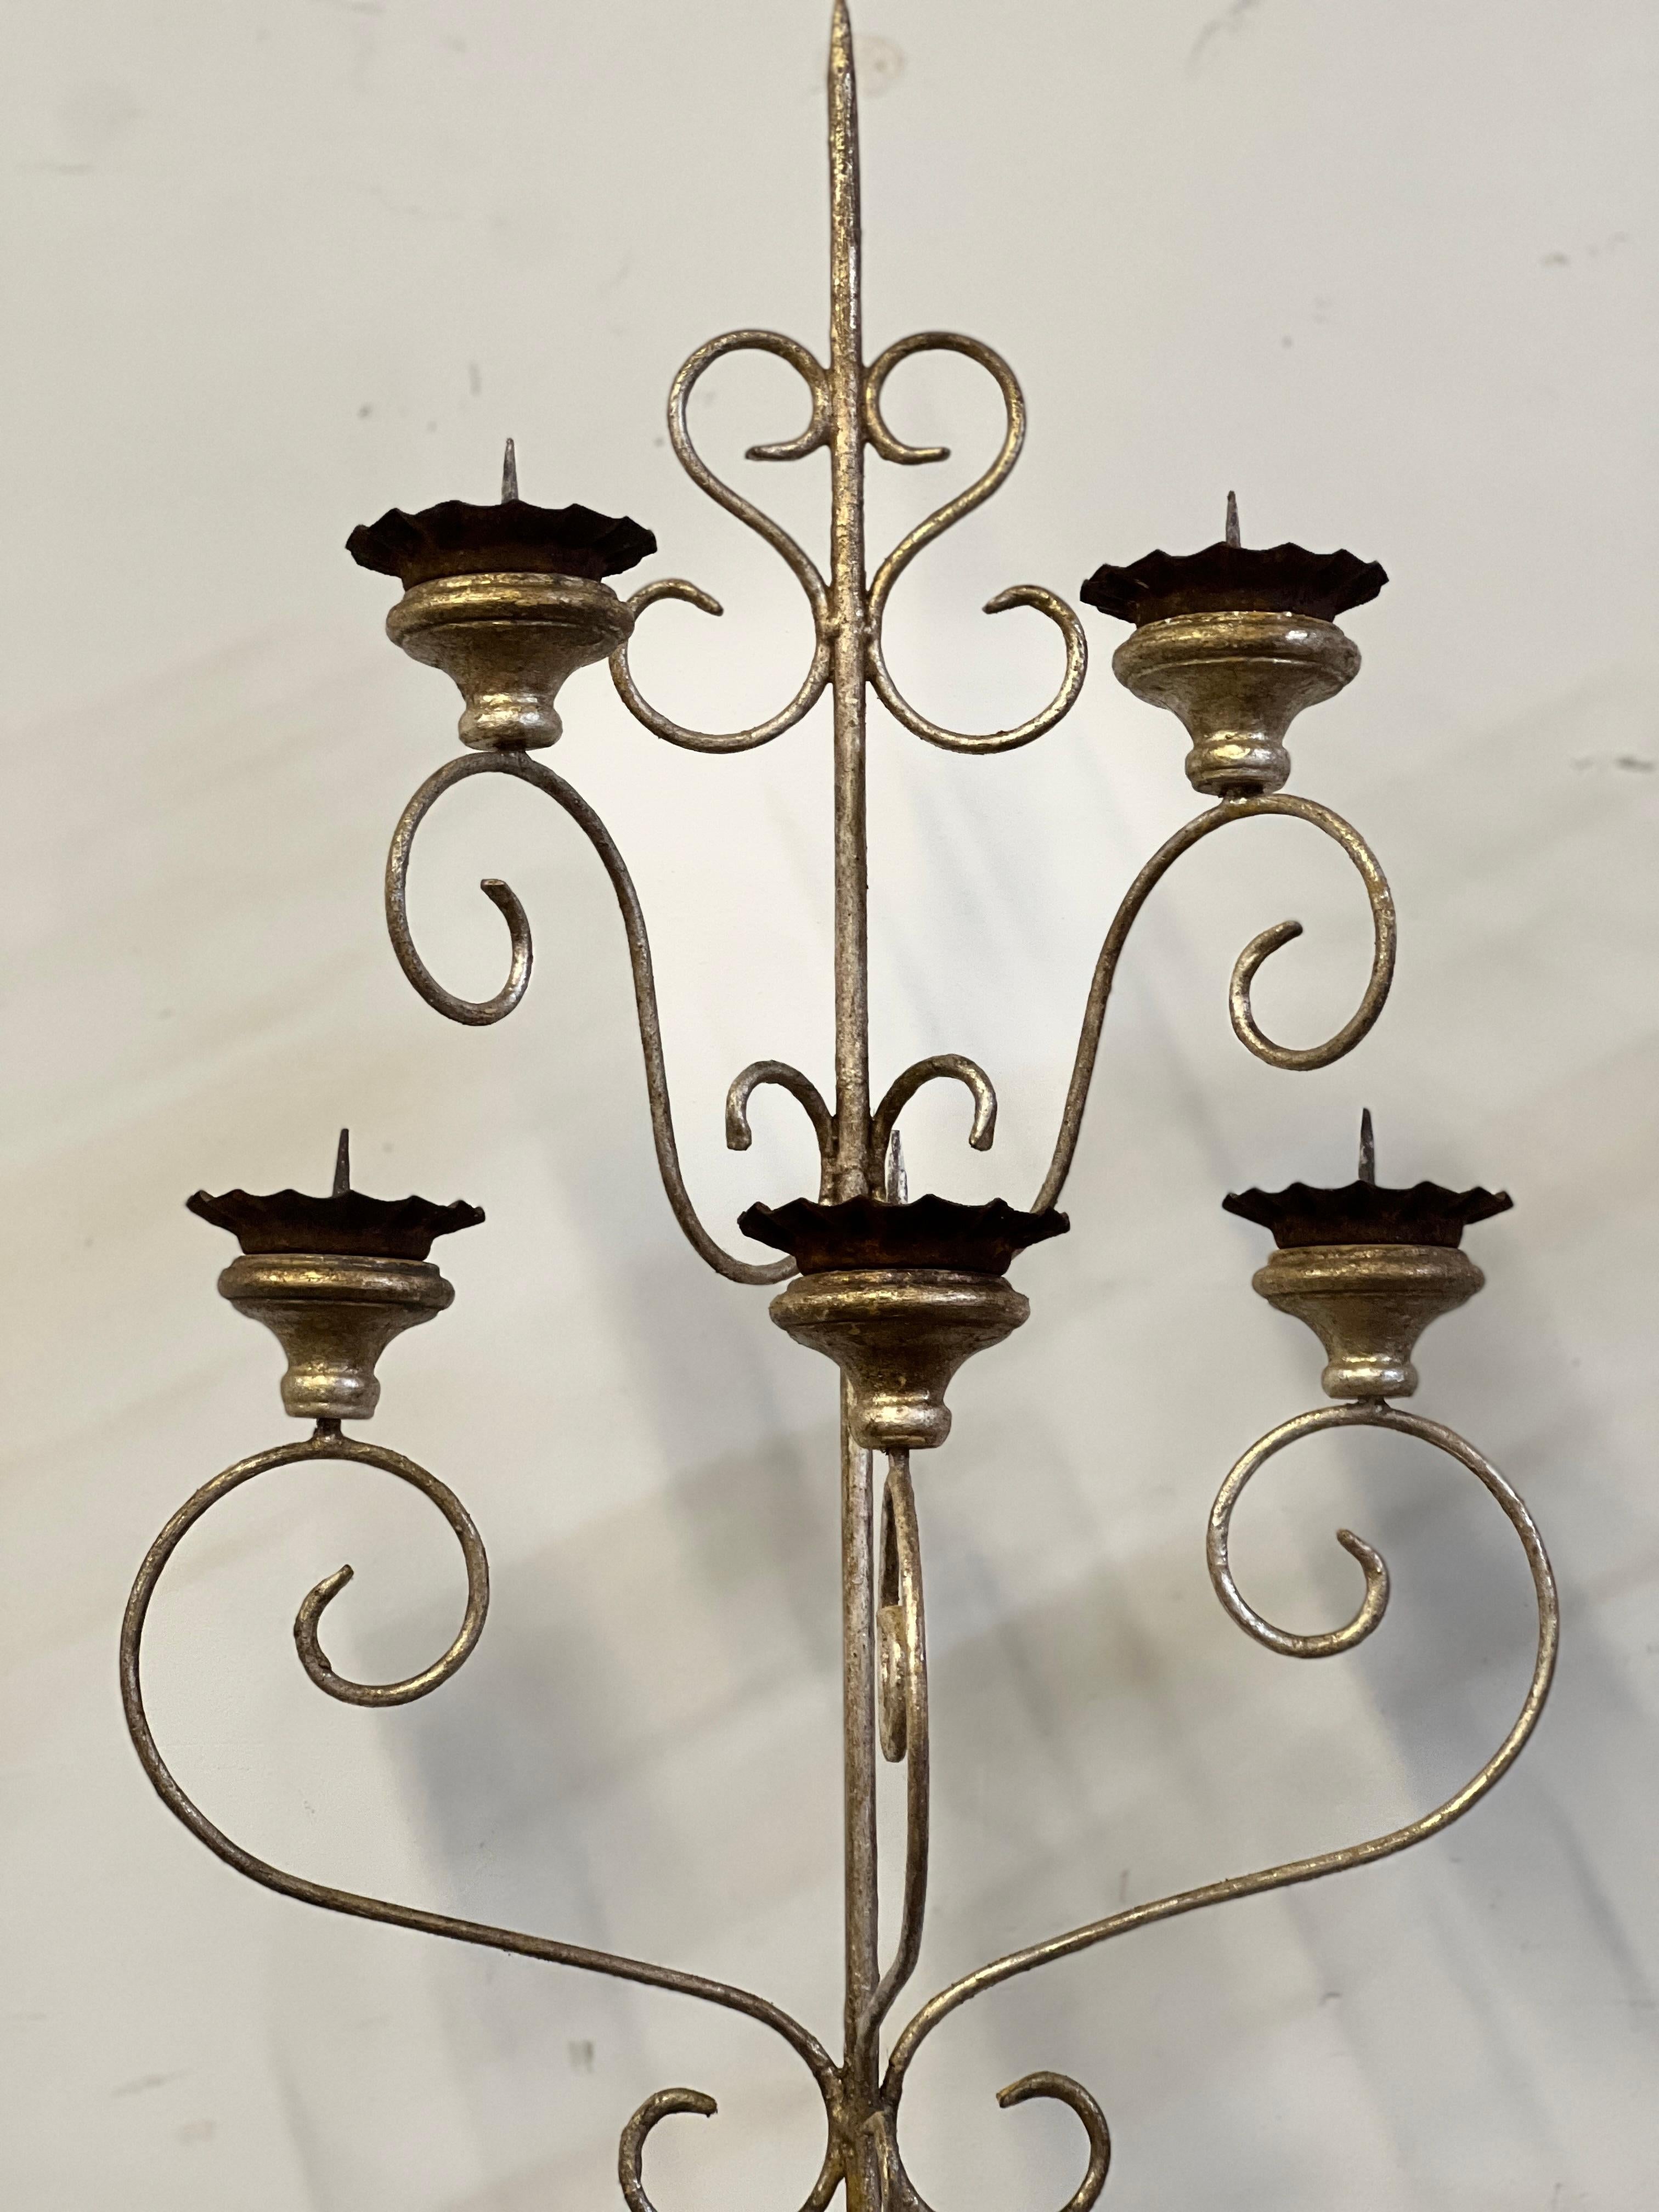 Einzigartiges und einfaches Paar silbervergoldeter italienischer 5-Arm-Kerzen-Wandleuchter, die antike italienische Bobeches aufweisen. Sie sind leicht und in einem neutralen Farbton gehalten, was sie perfekt für viele Räume macht. Dieses Paar wird